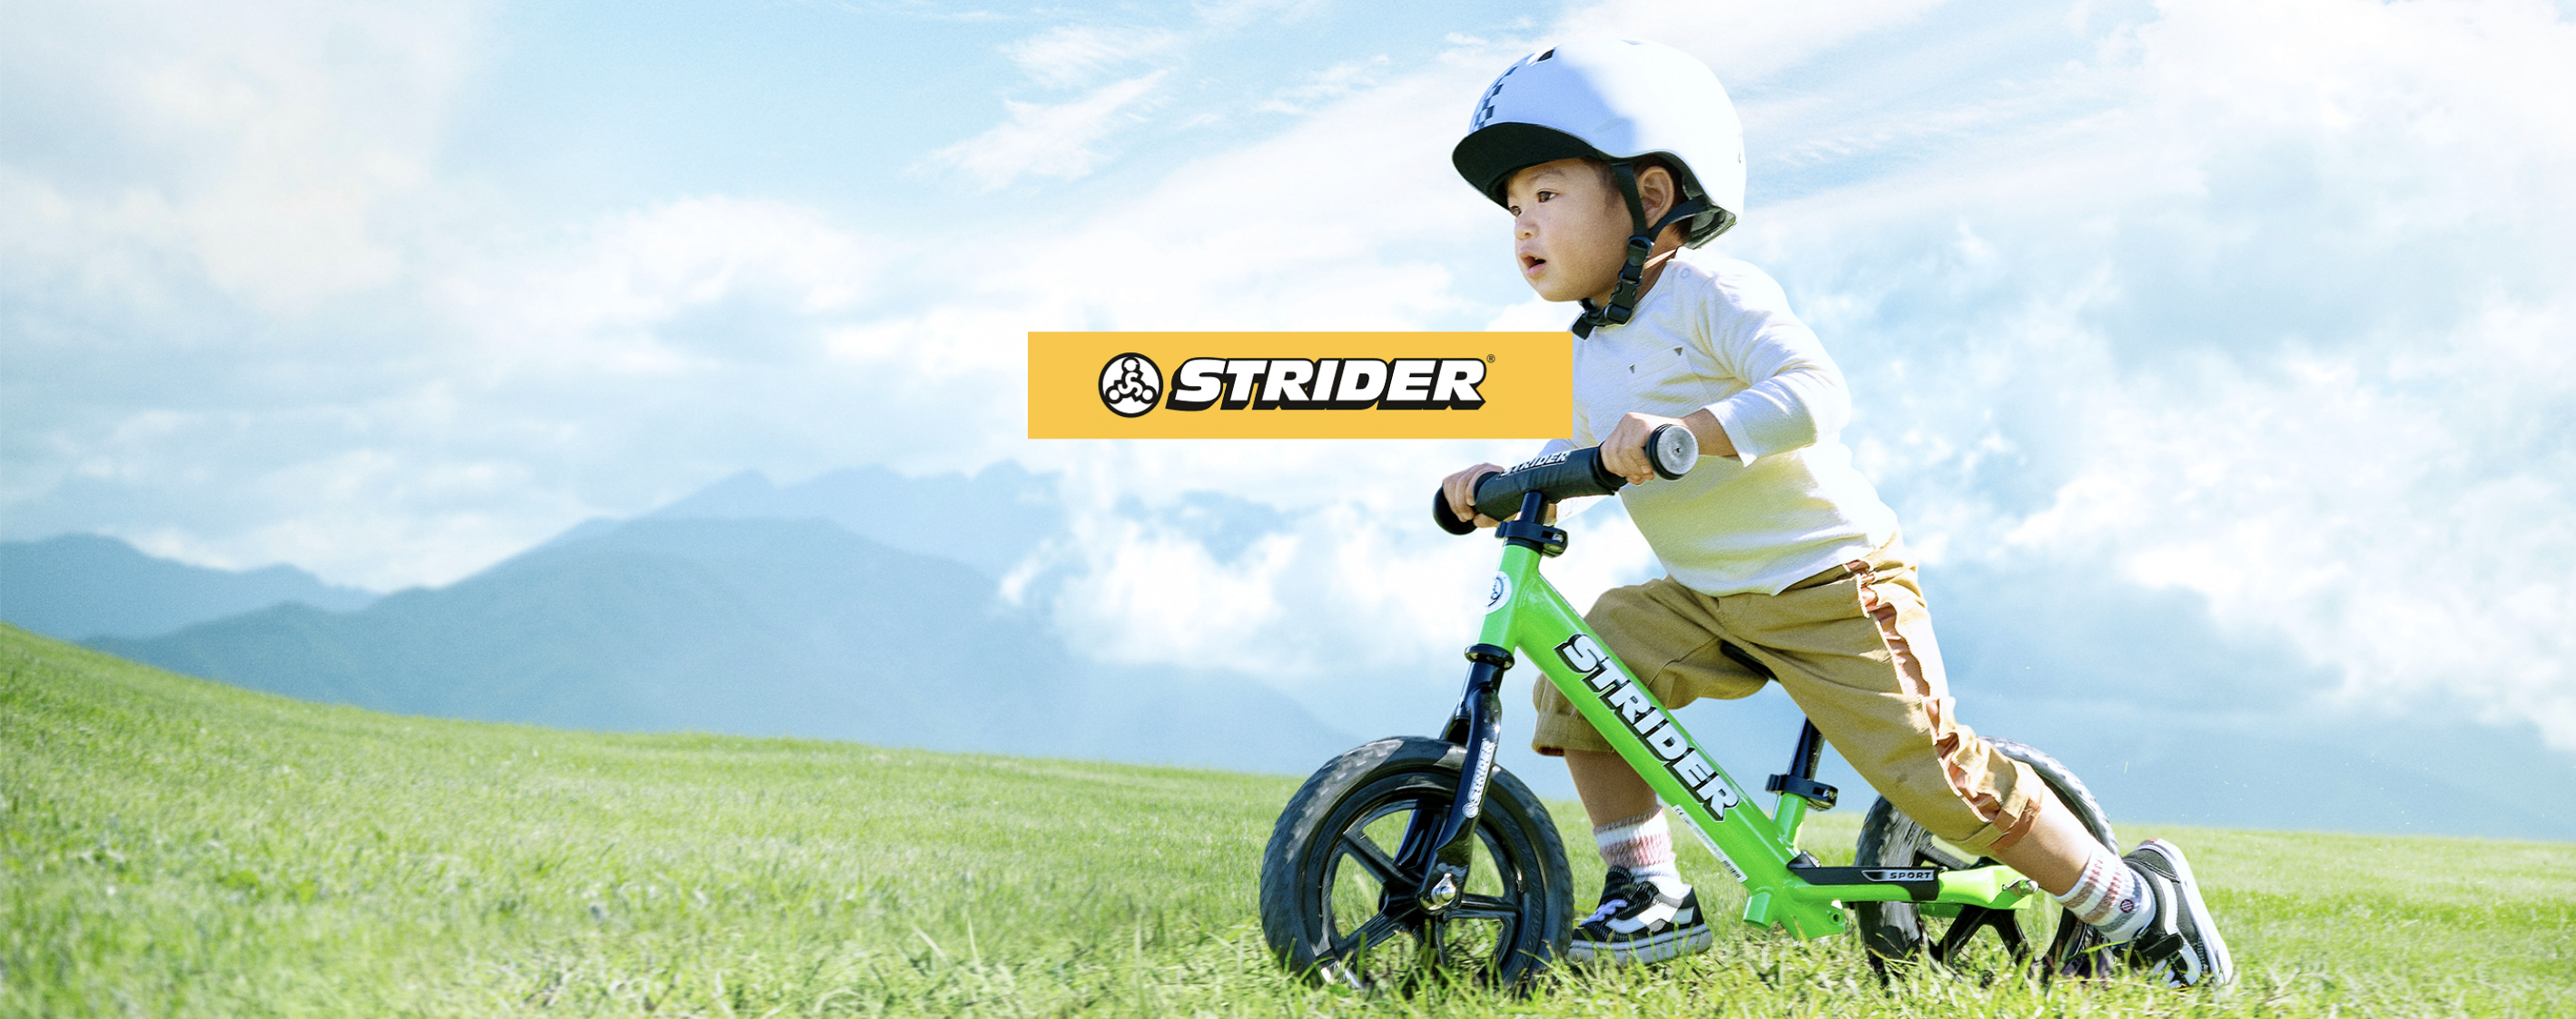 1.5歳から乗れるキックバイク「ストライダー」